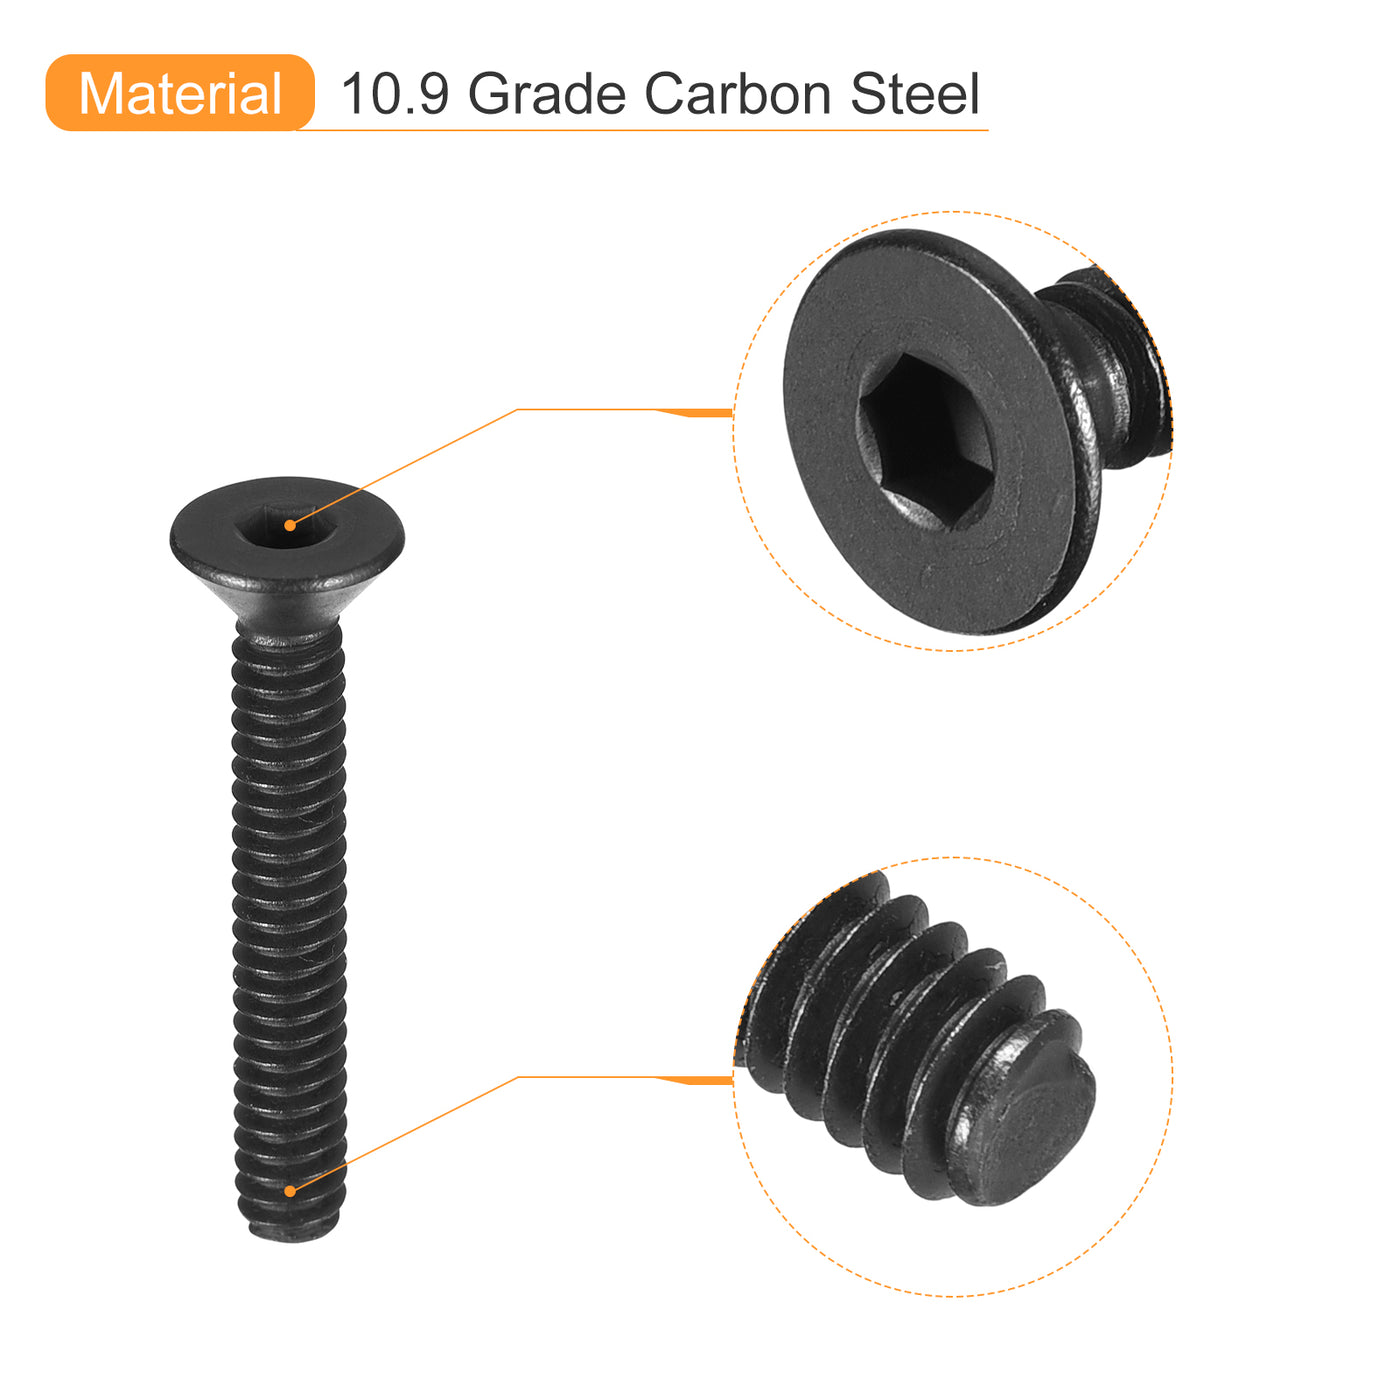 uxcell Uxcell #4-40x3/4" Flat Head Socket Cap Screws, 10.9 Grade Carbon, Black, 10pcs